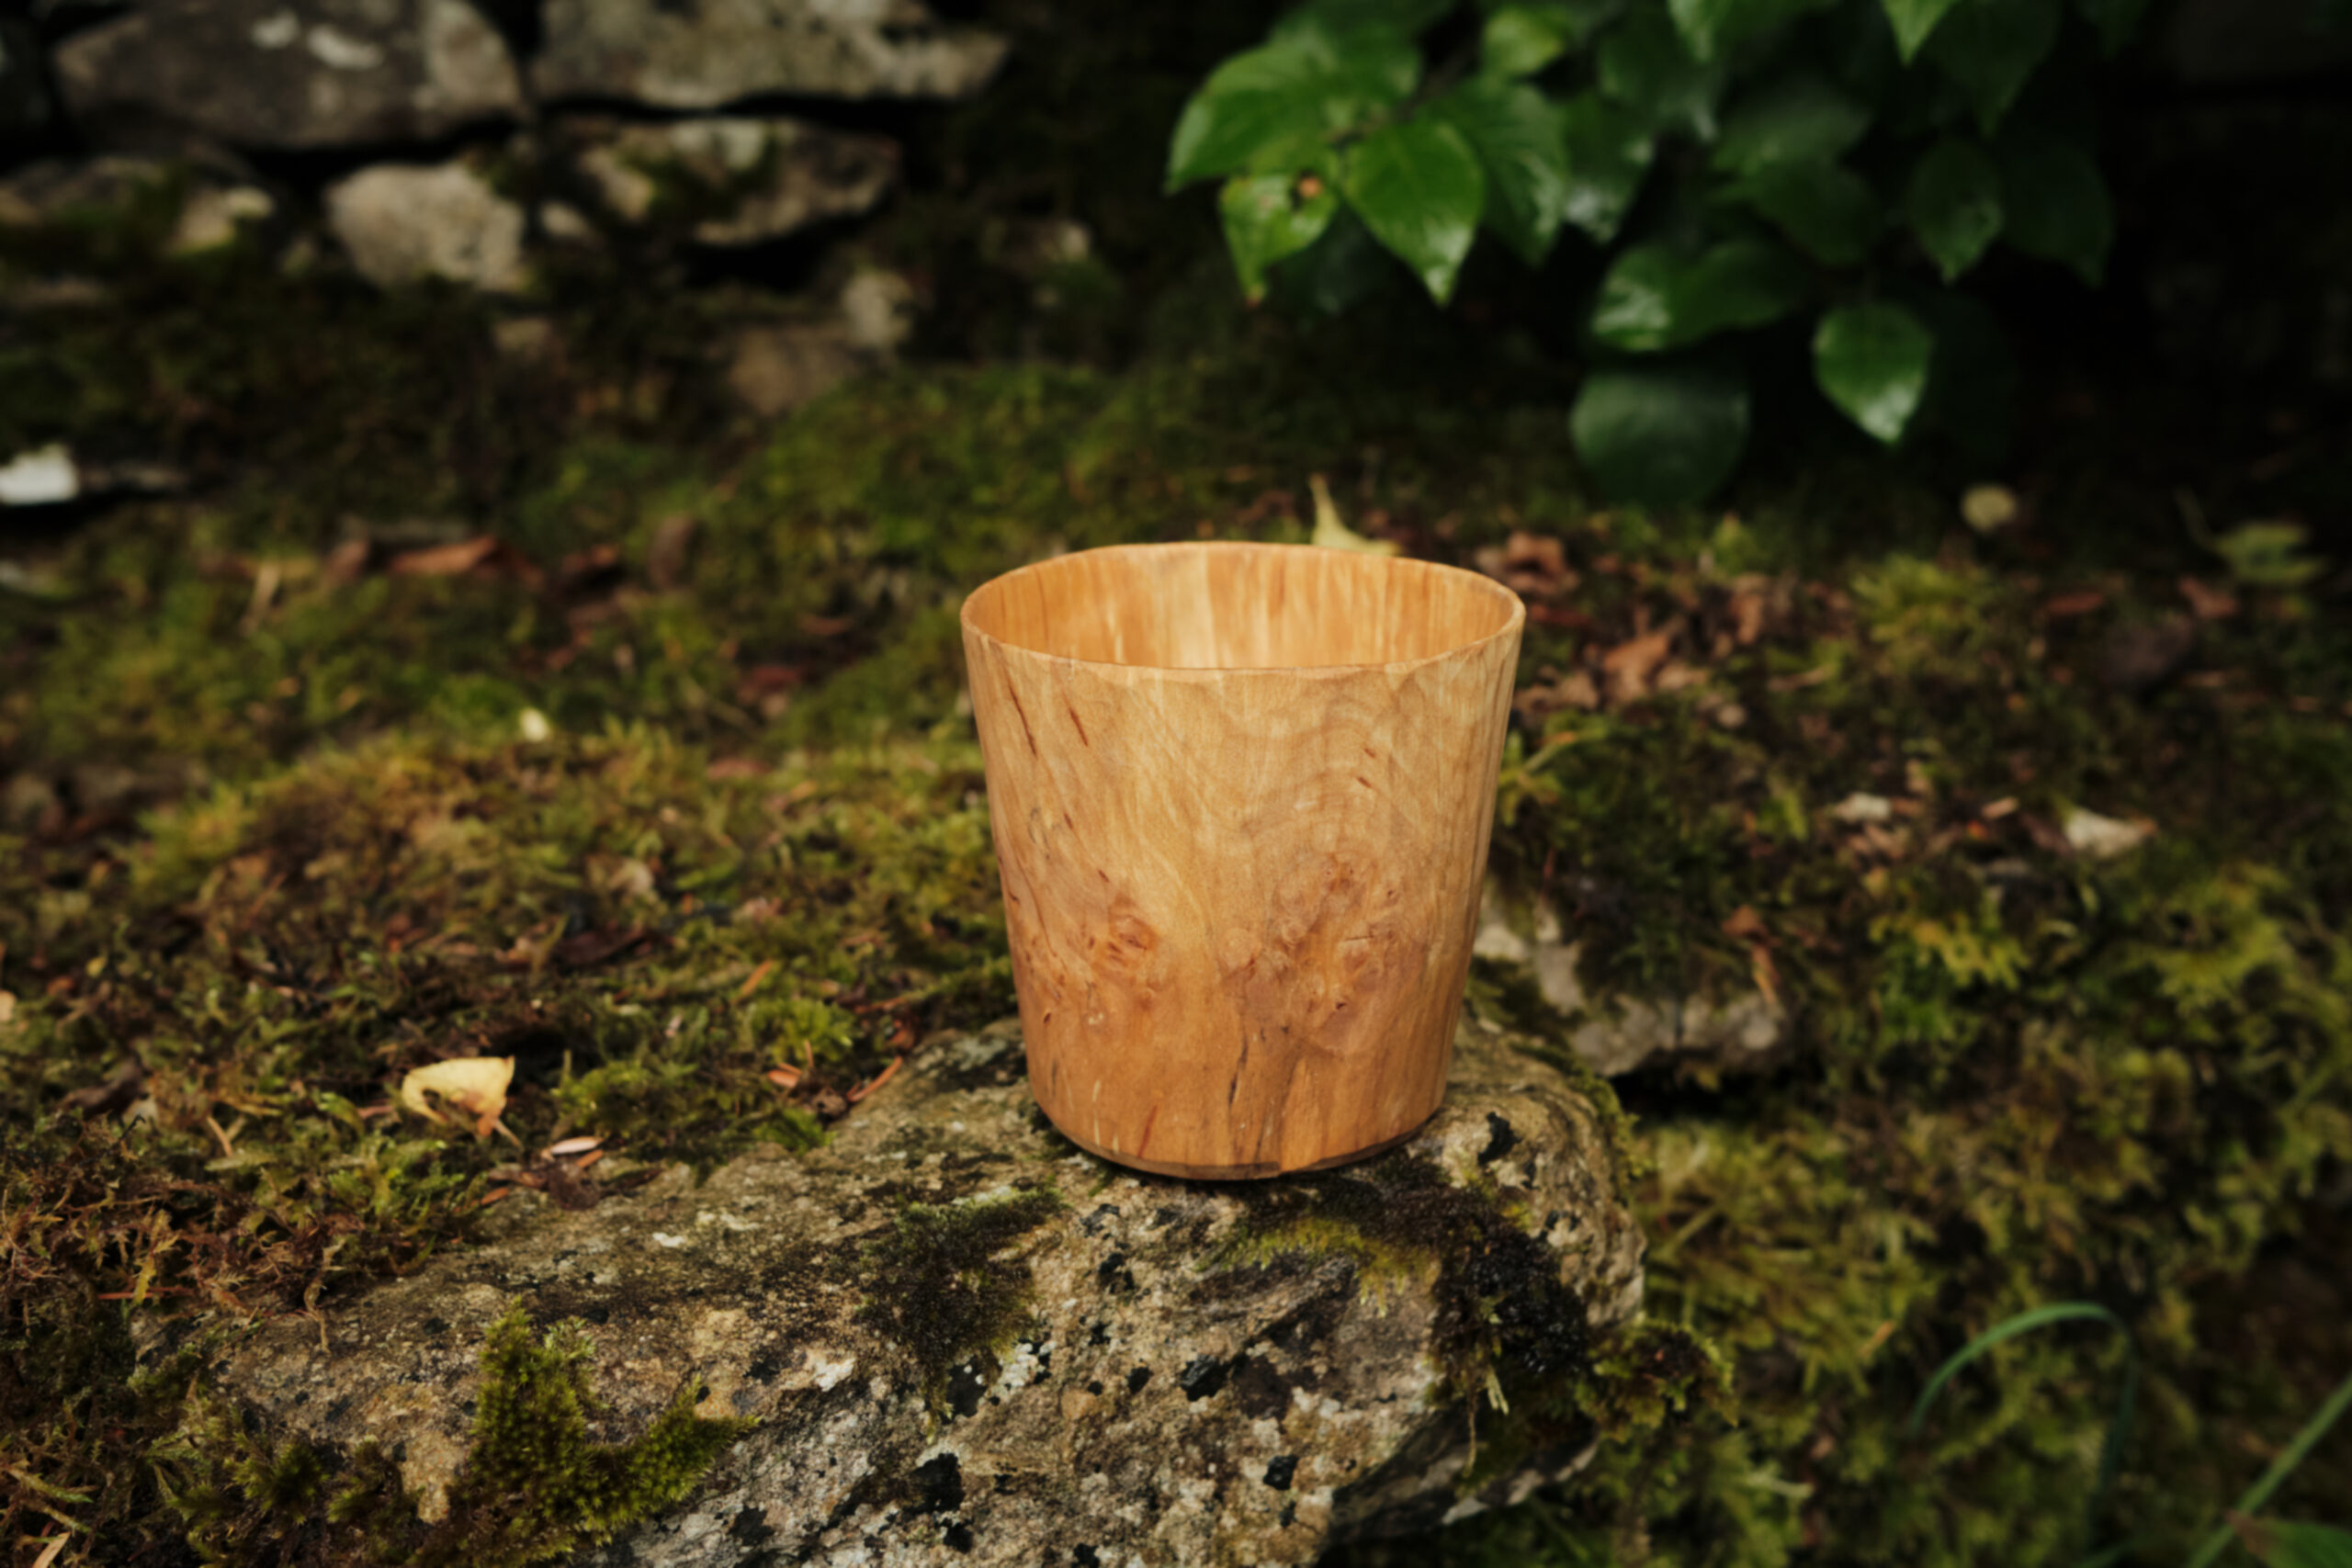 Hand carved cup, end grain alder